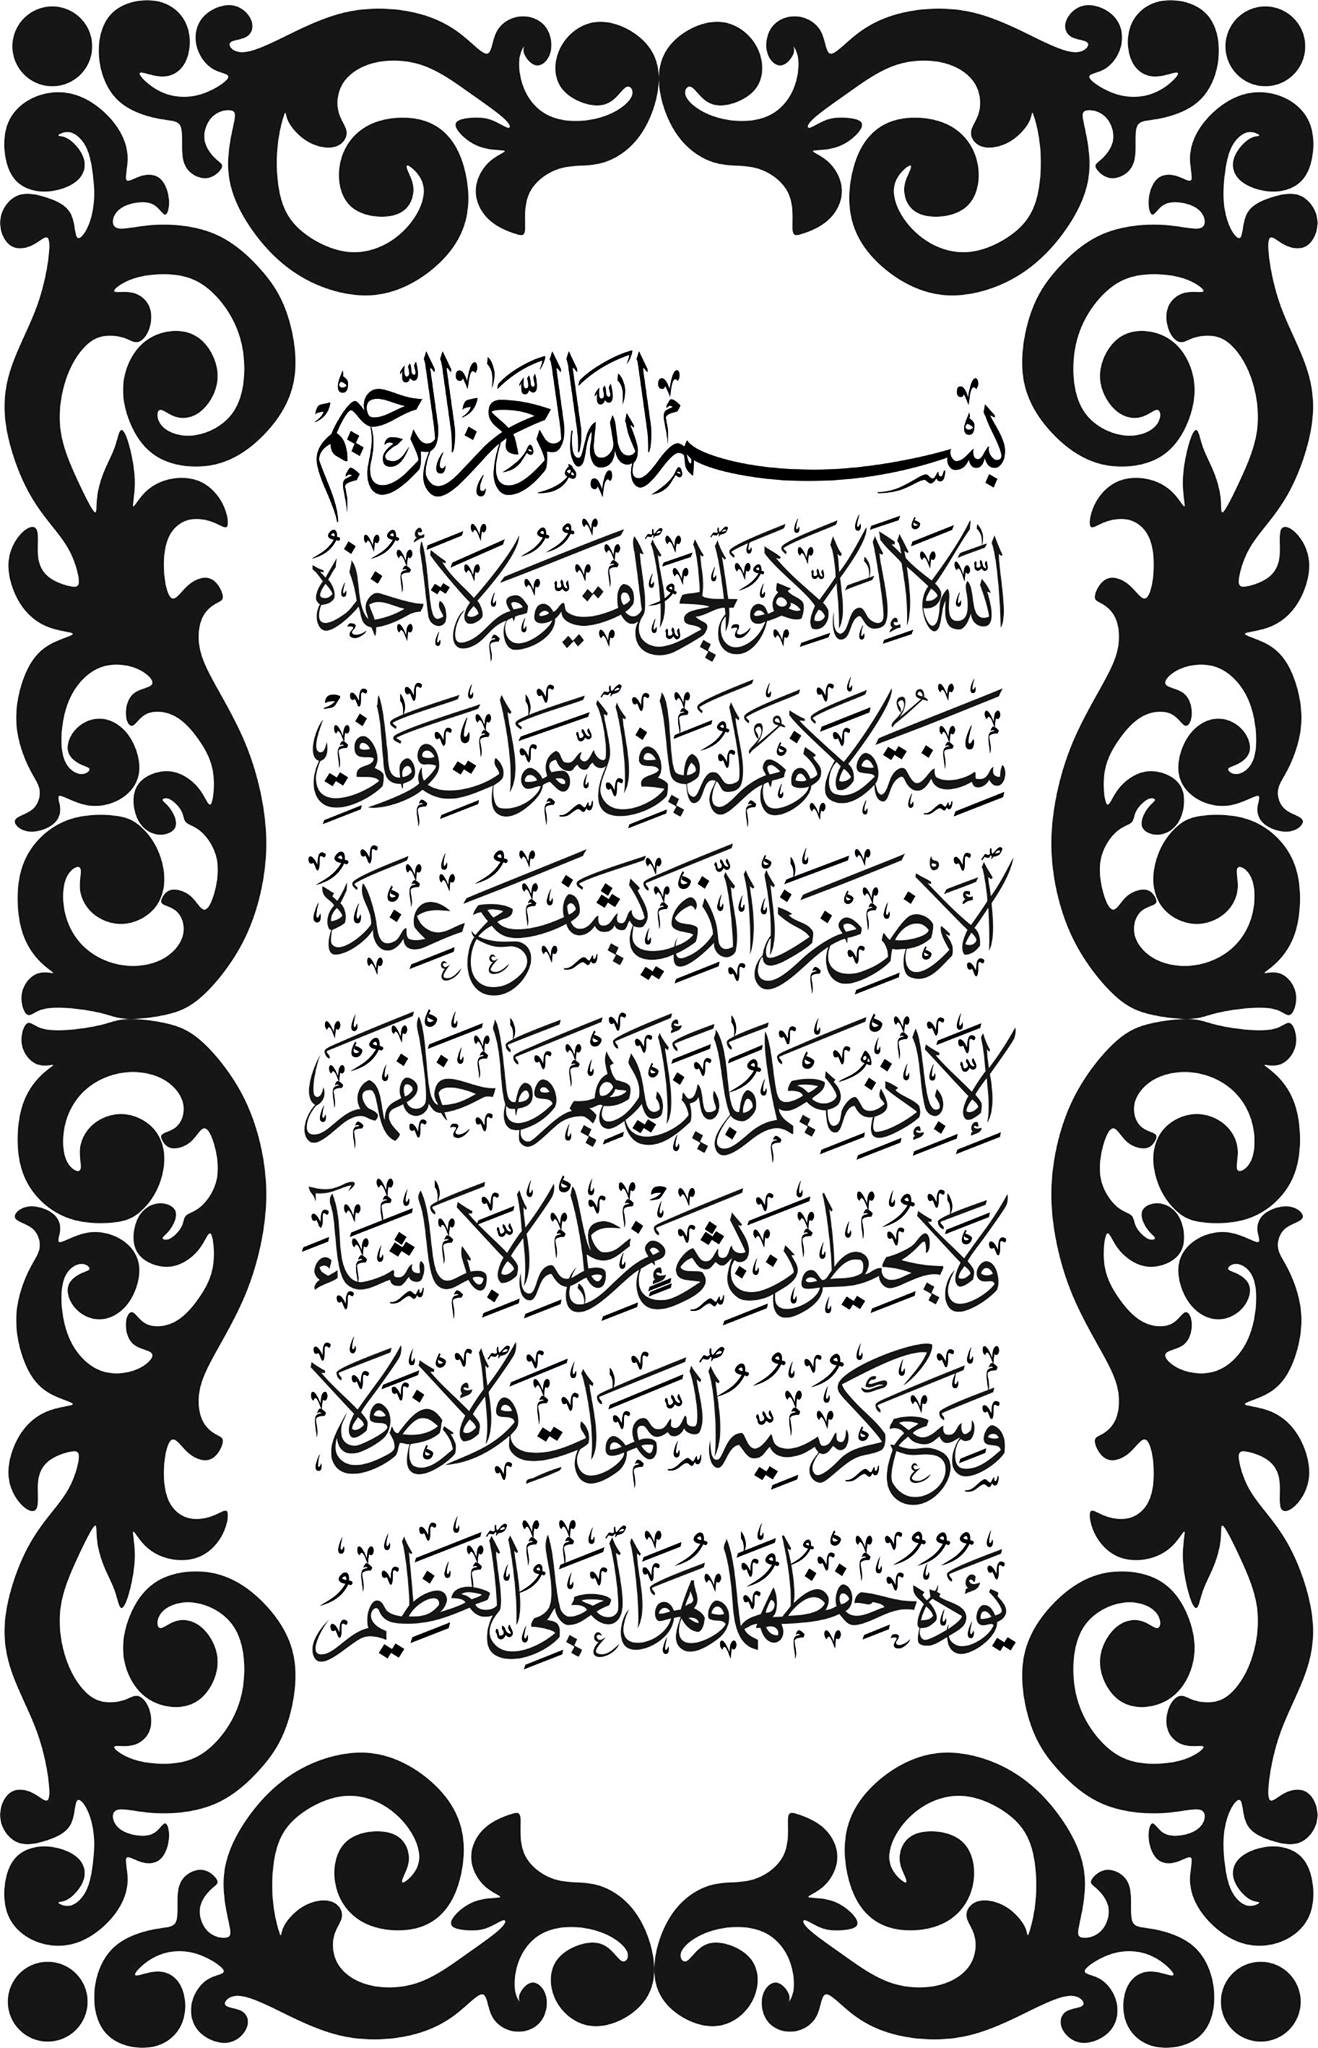 ayatul kursi in arabic text